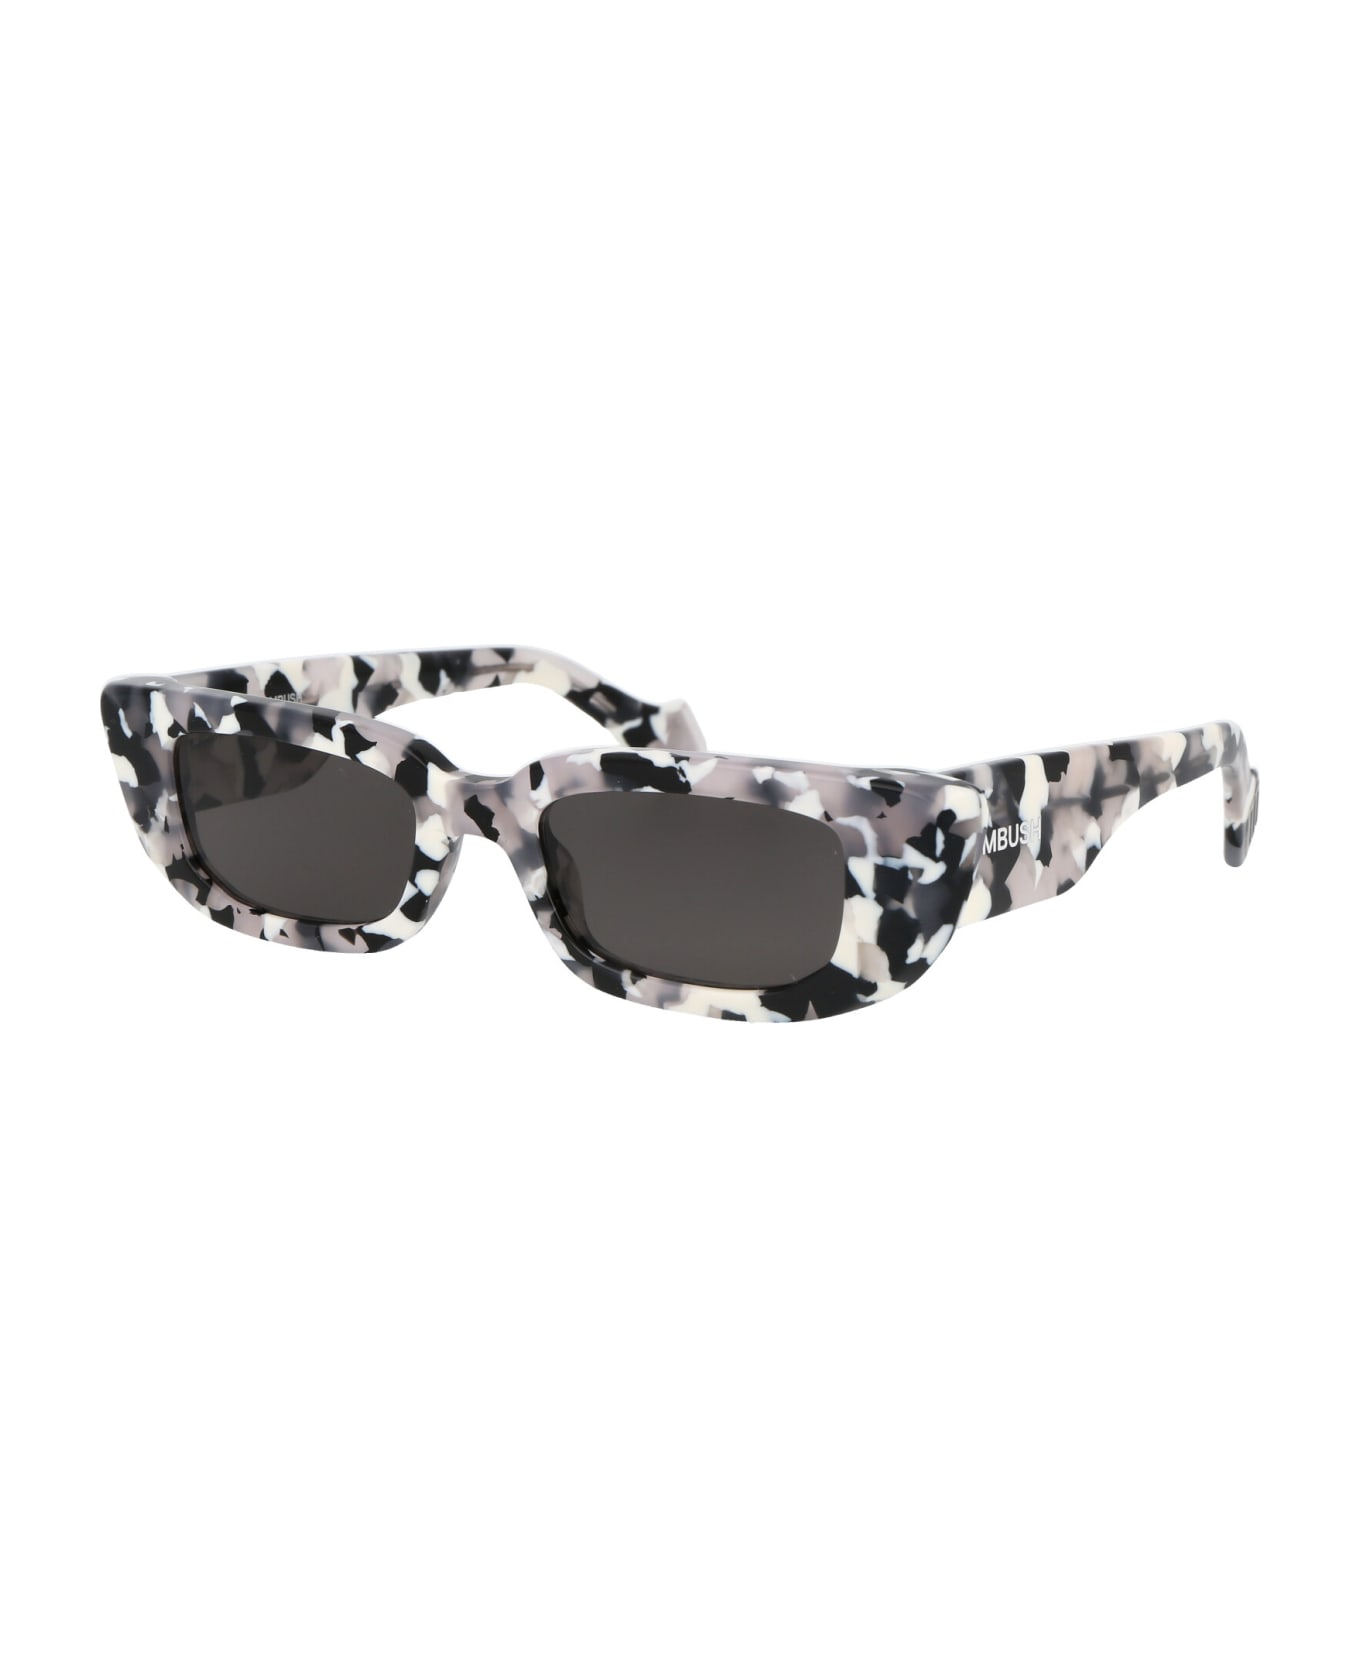 AMBUSH Nova Sunglasses - 1207 BLACK DARK GREY